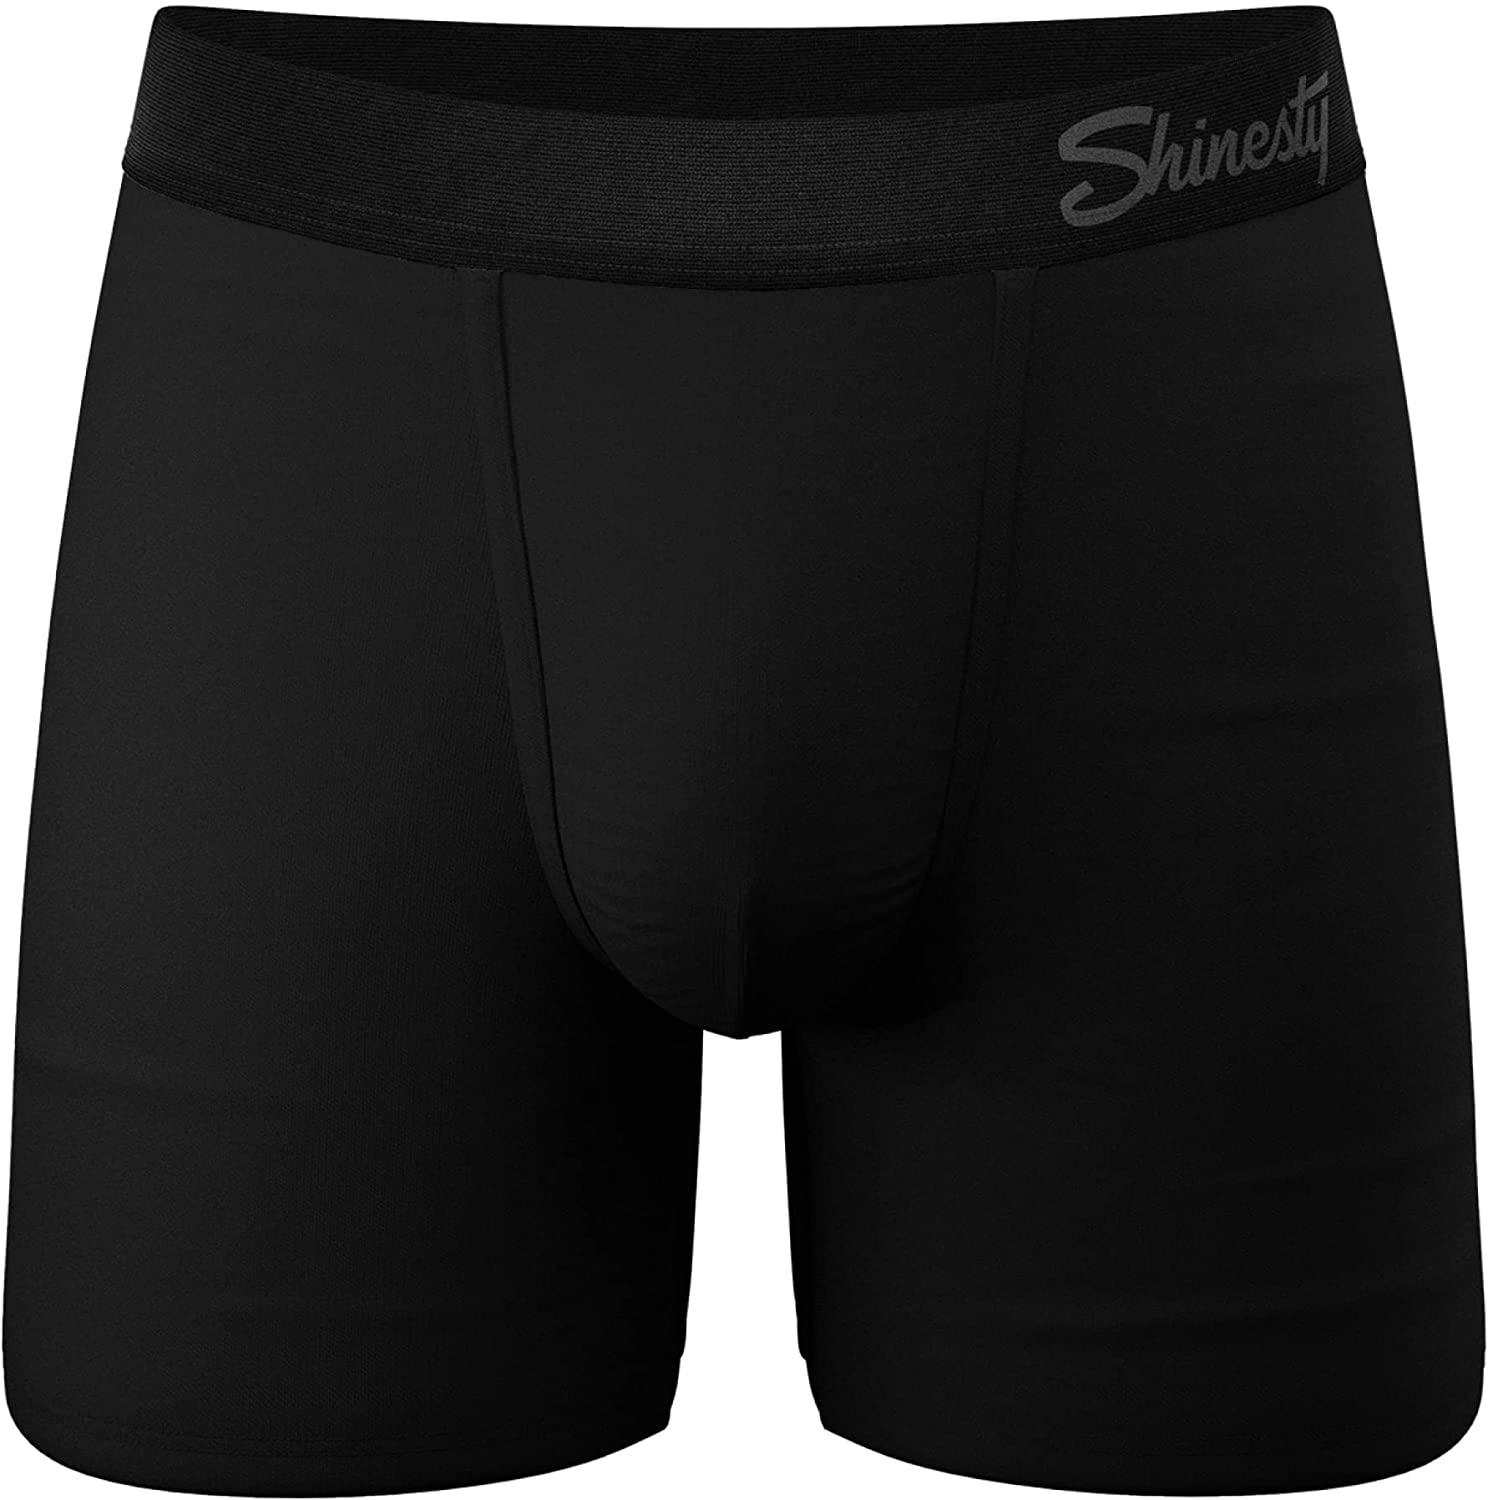  Shinesty Hammock Support Mens Underwear Boxer Briefs Men